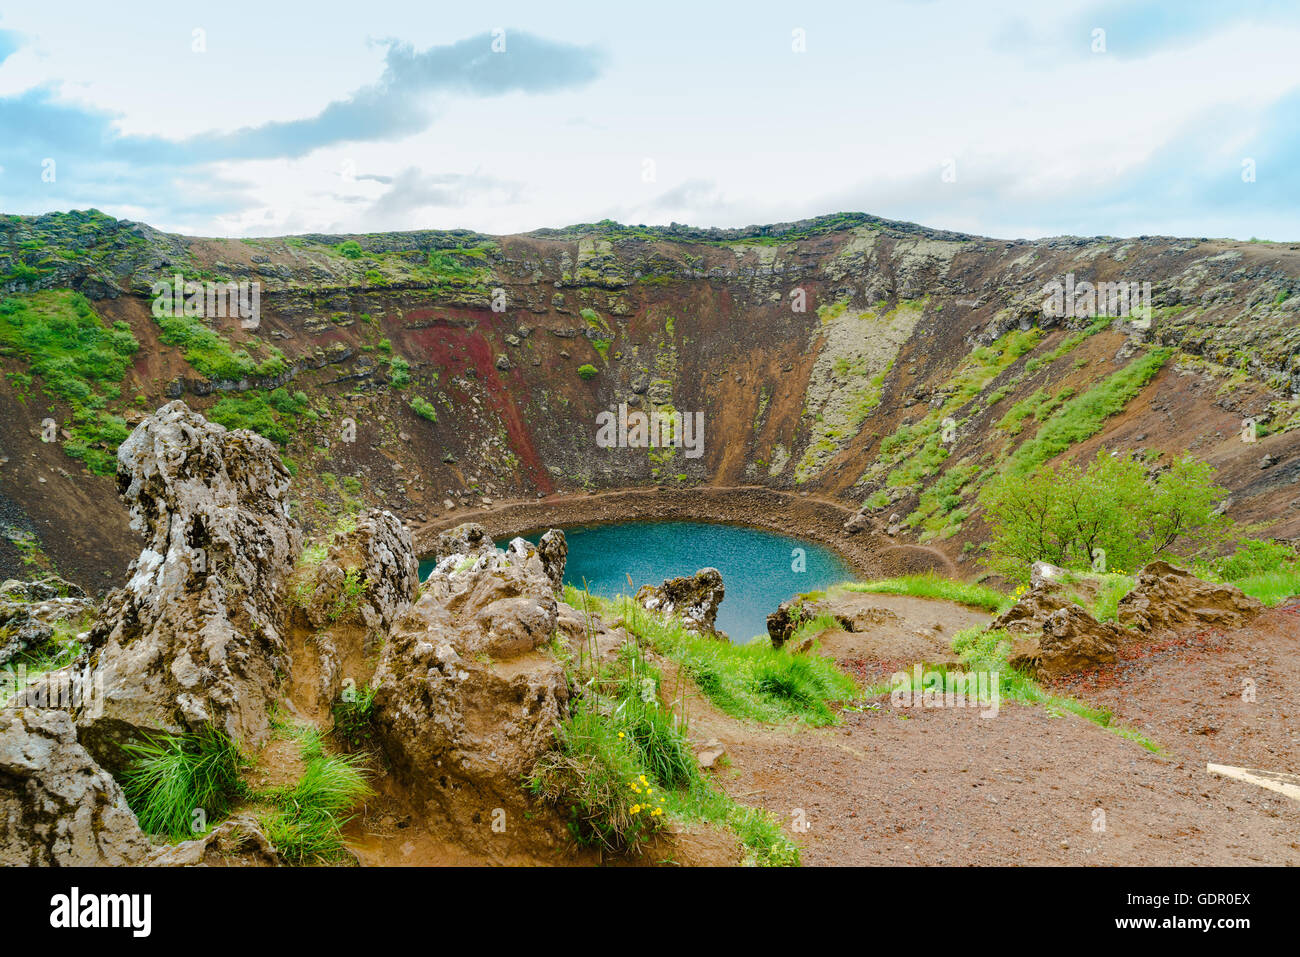 Kerid un lago riempito il cratere vulcanico nel sud-ovest dell'Islanda Foto Stock